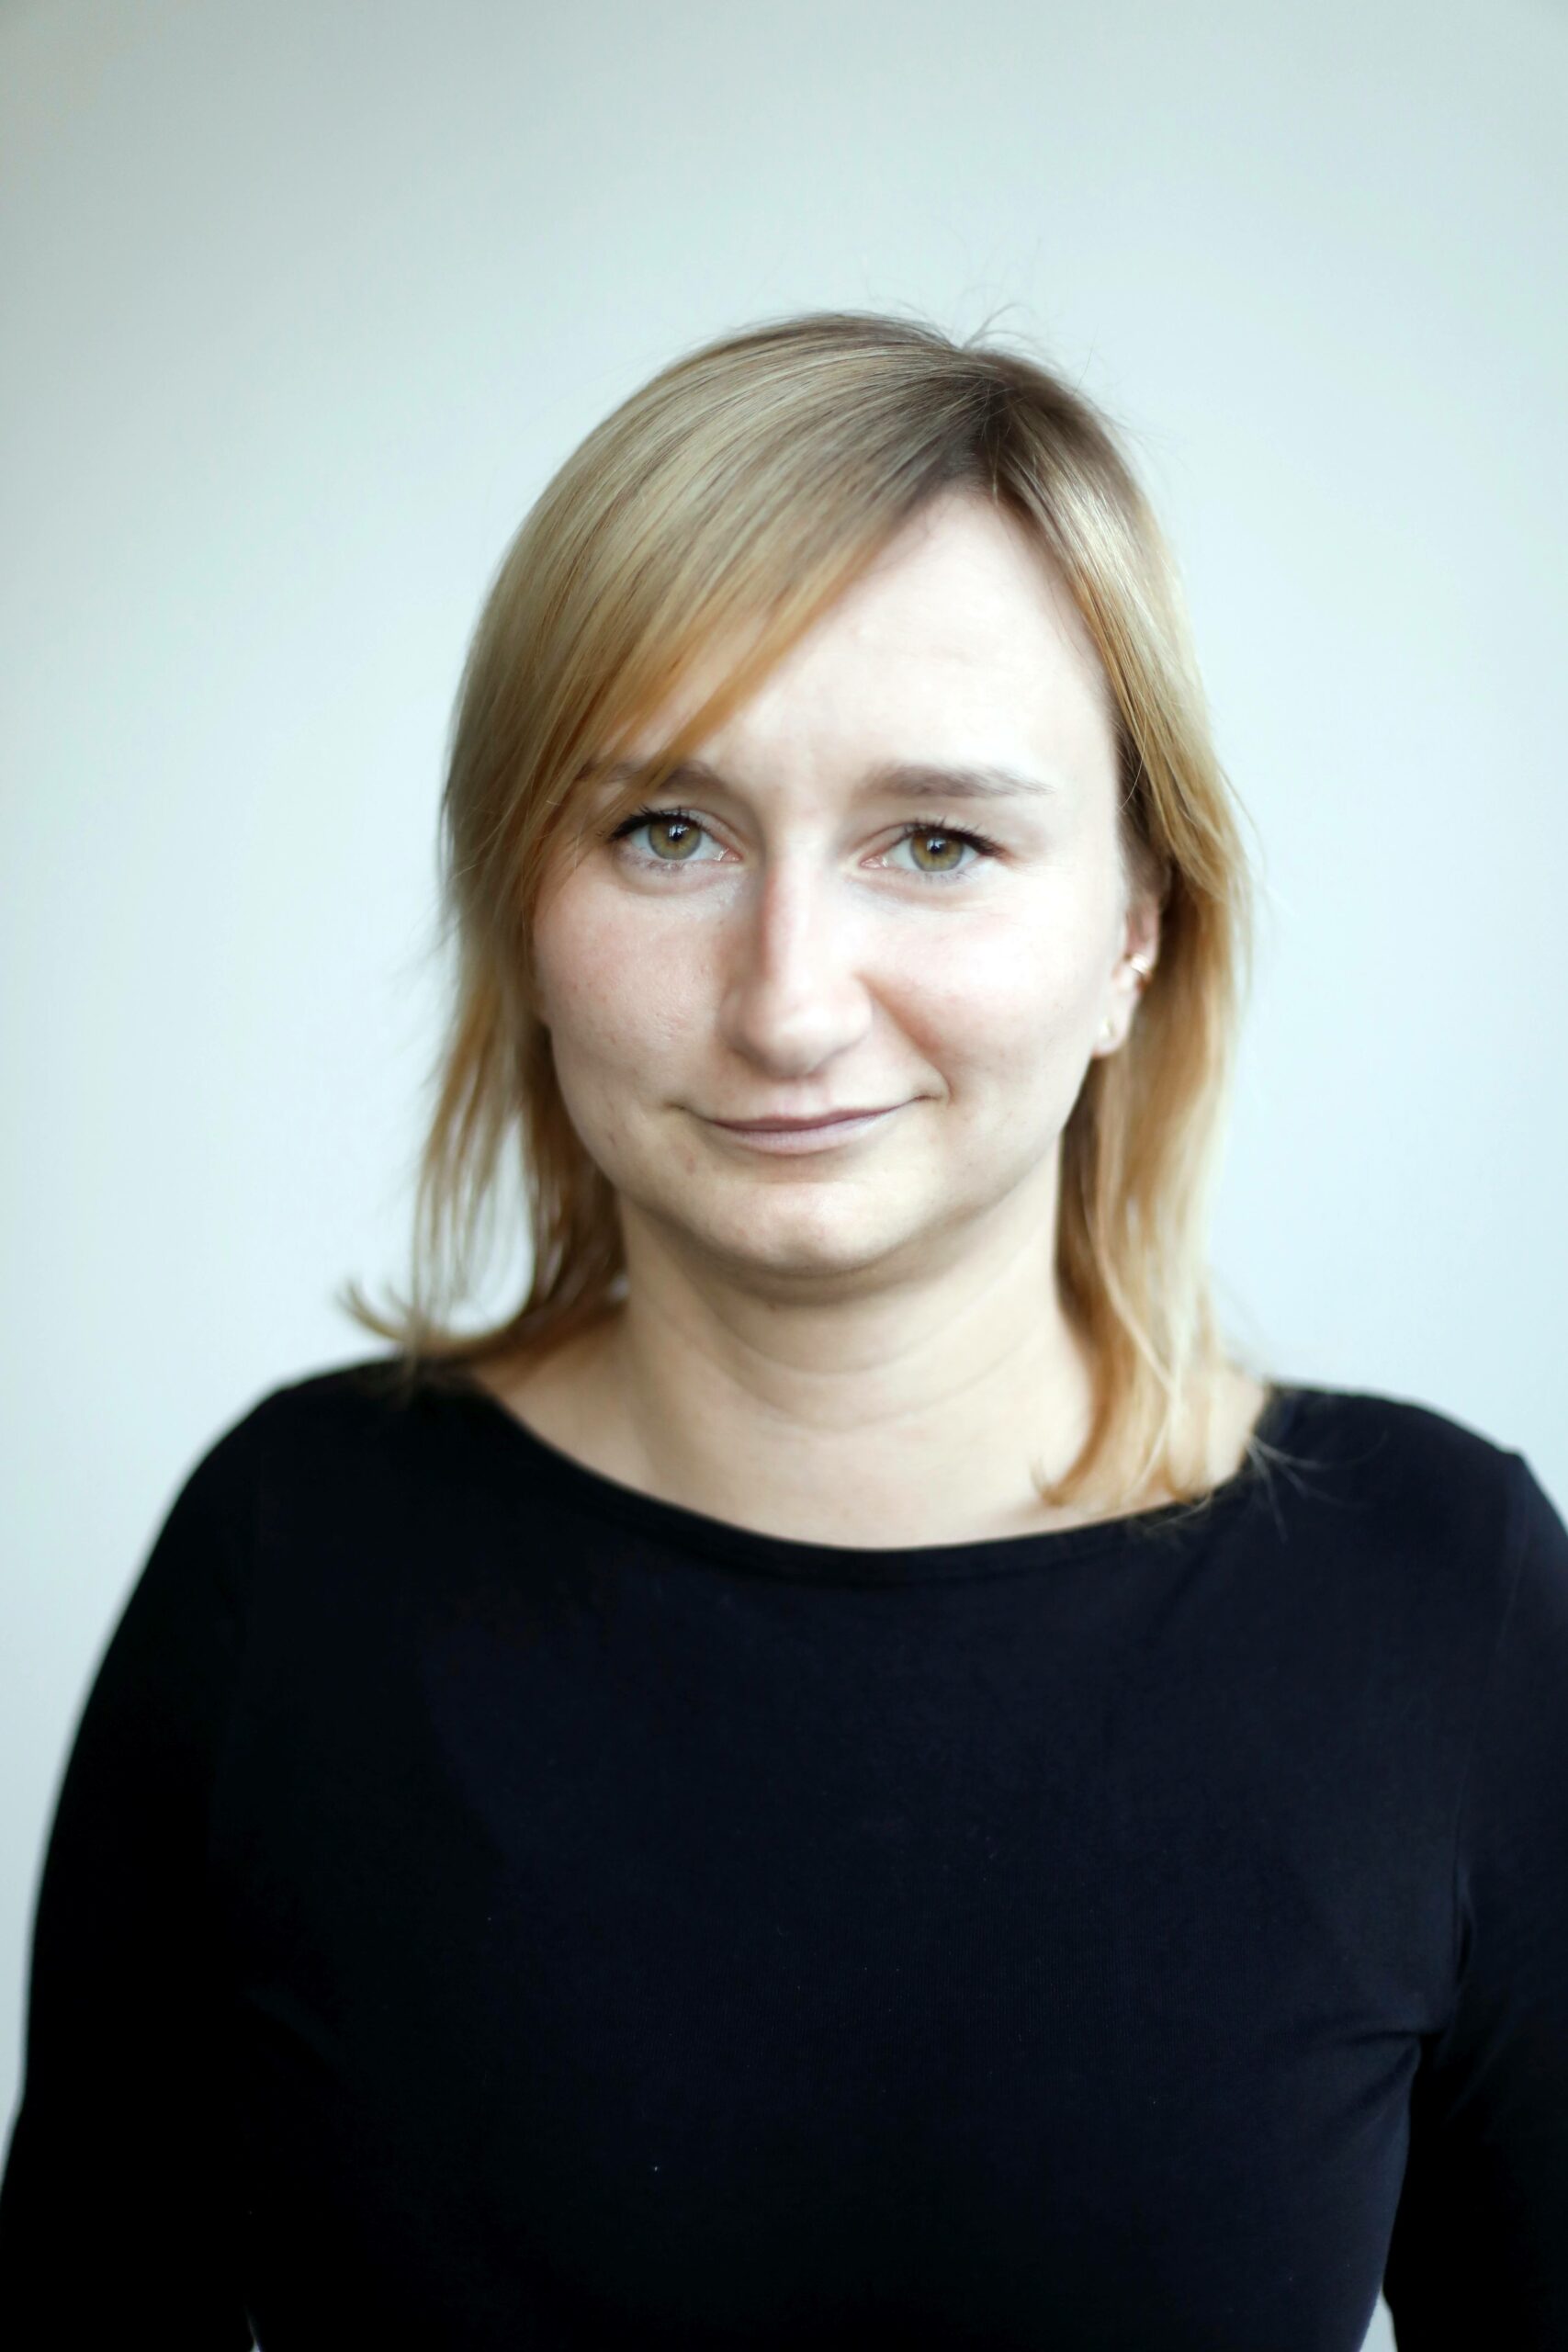 Izabela Koza, Head of Premium Content Marketing & Audience beim “Kölner Stadt-Anzeiger” und OR-Absolventin von 2015